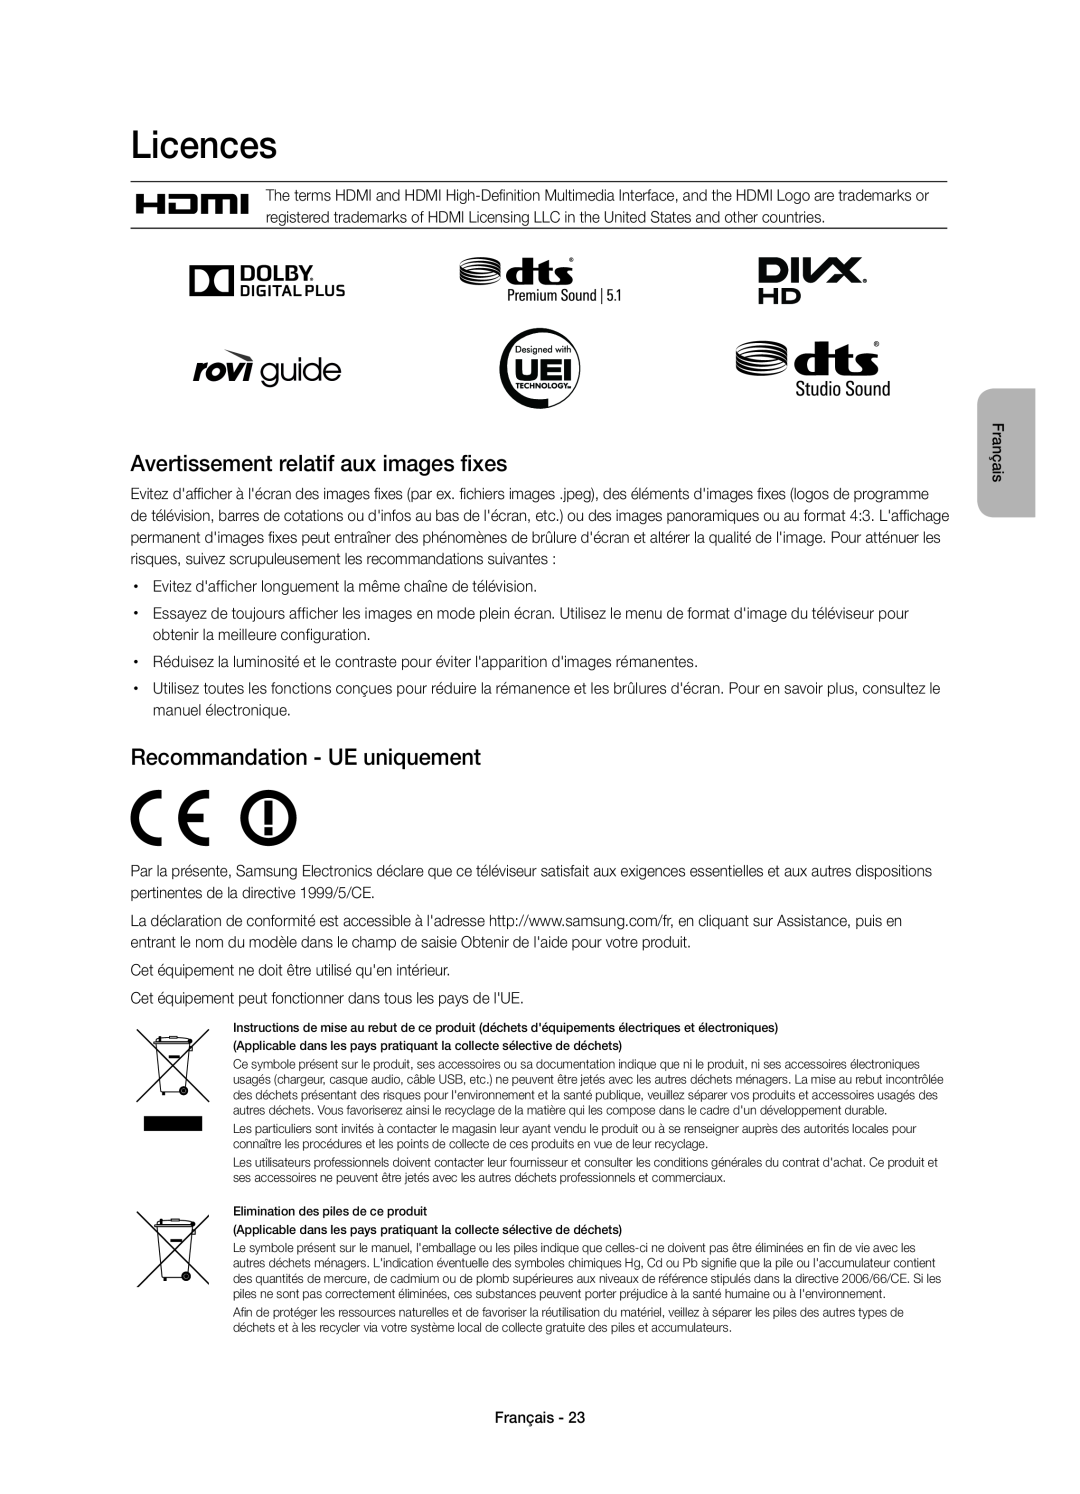 Samsung UE55H6620SVXZG manual Avertissement relatif aux images fixes, Recommandation - UE uniquement, Licences, Français 